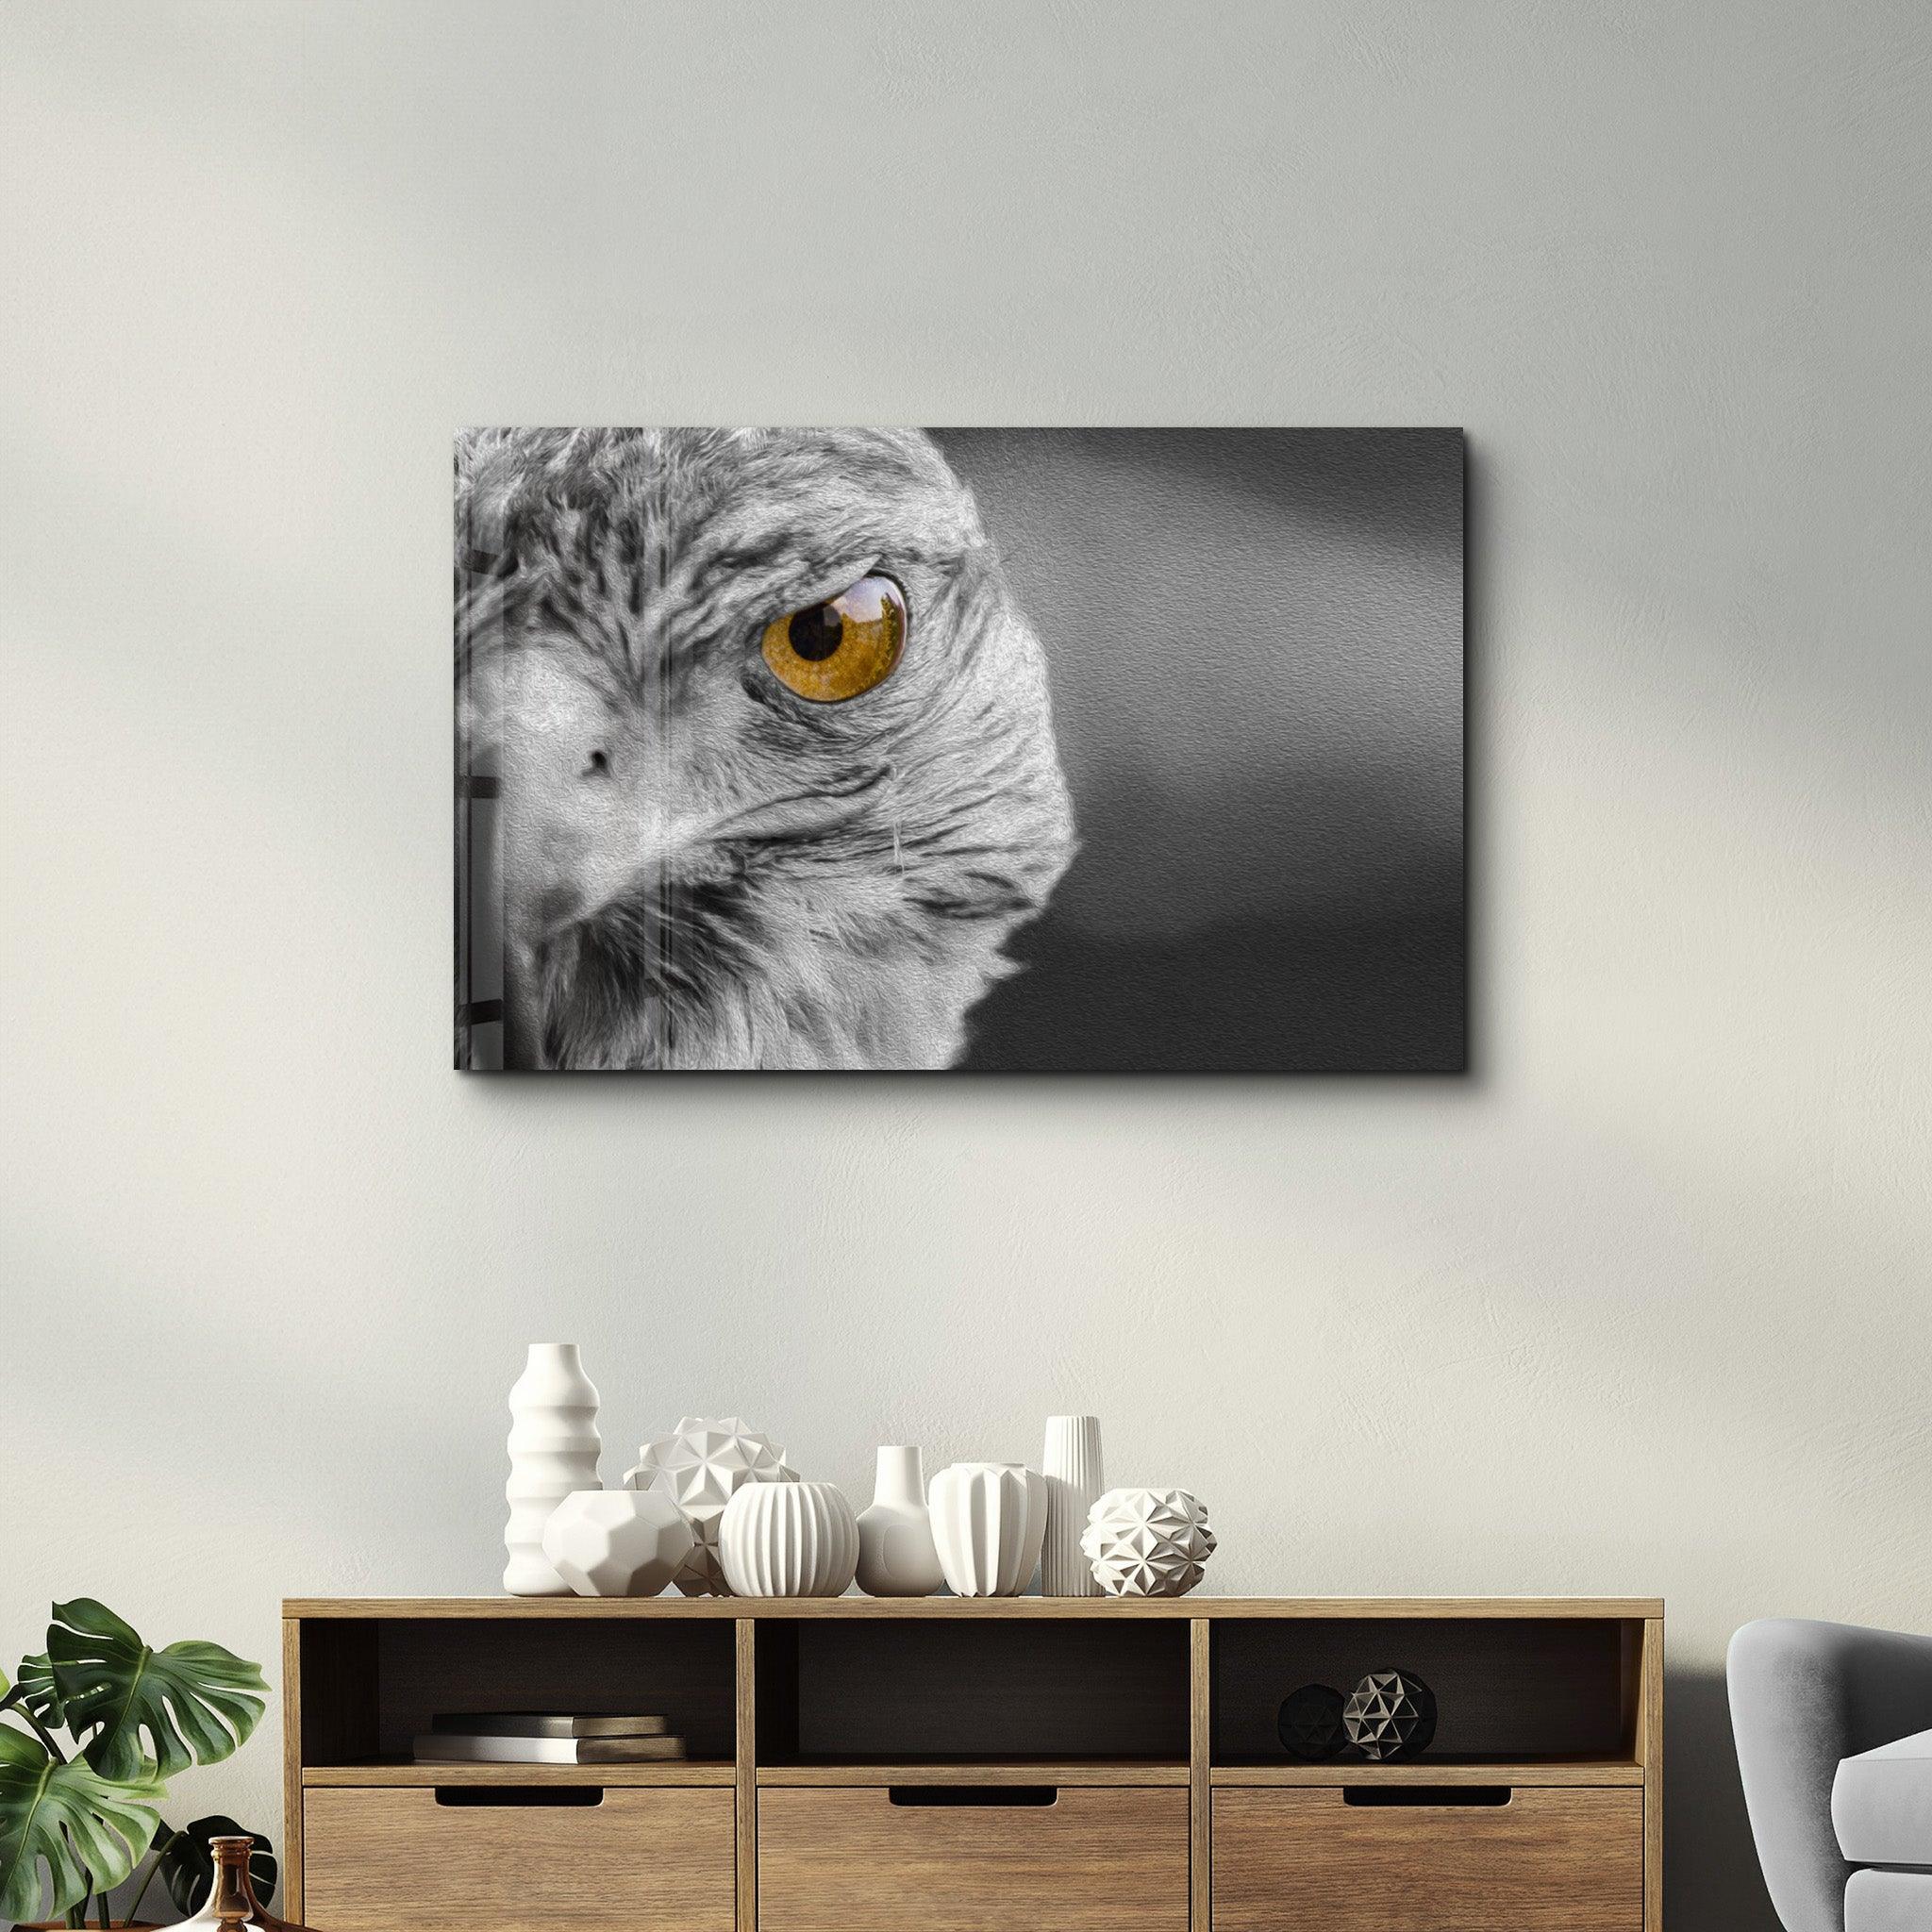 Hawk | Glass Wall Art - ArtDesigna Glass Printing Wall Art